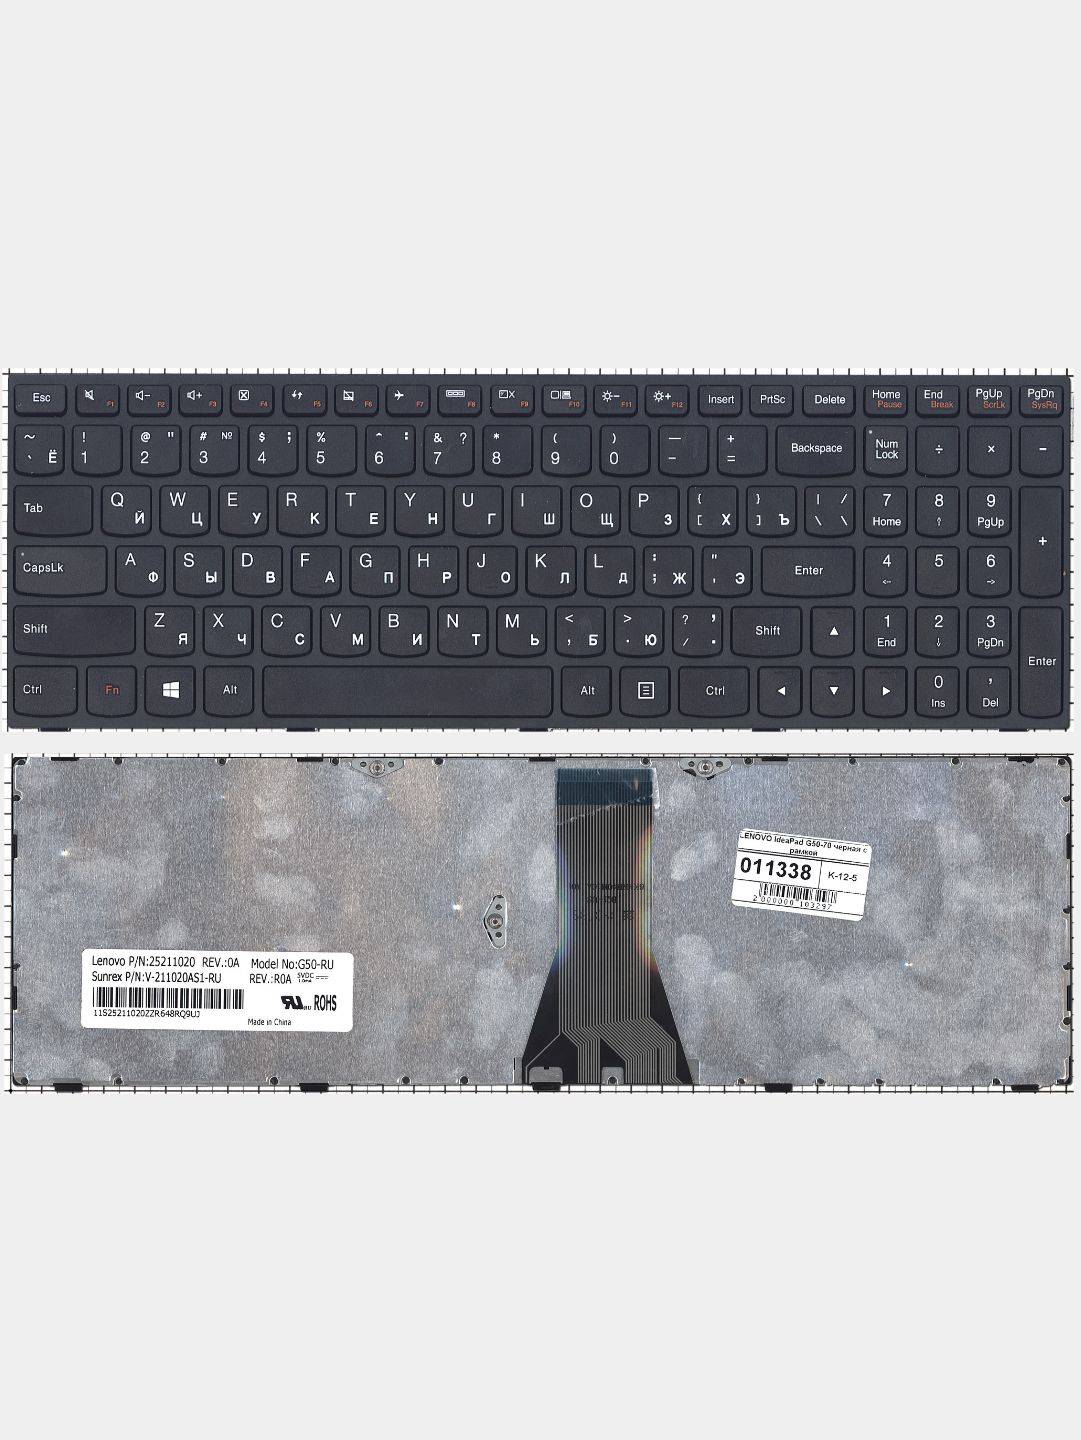 Ноутбуки Lenovo G50 70 Купить